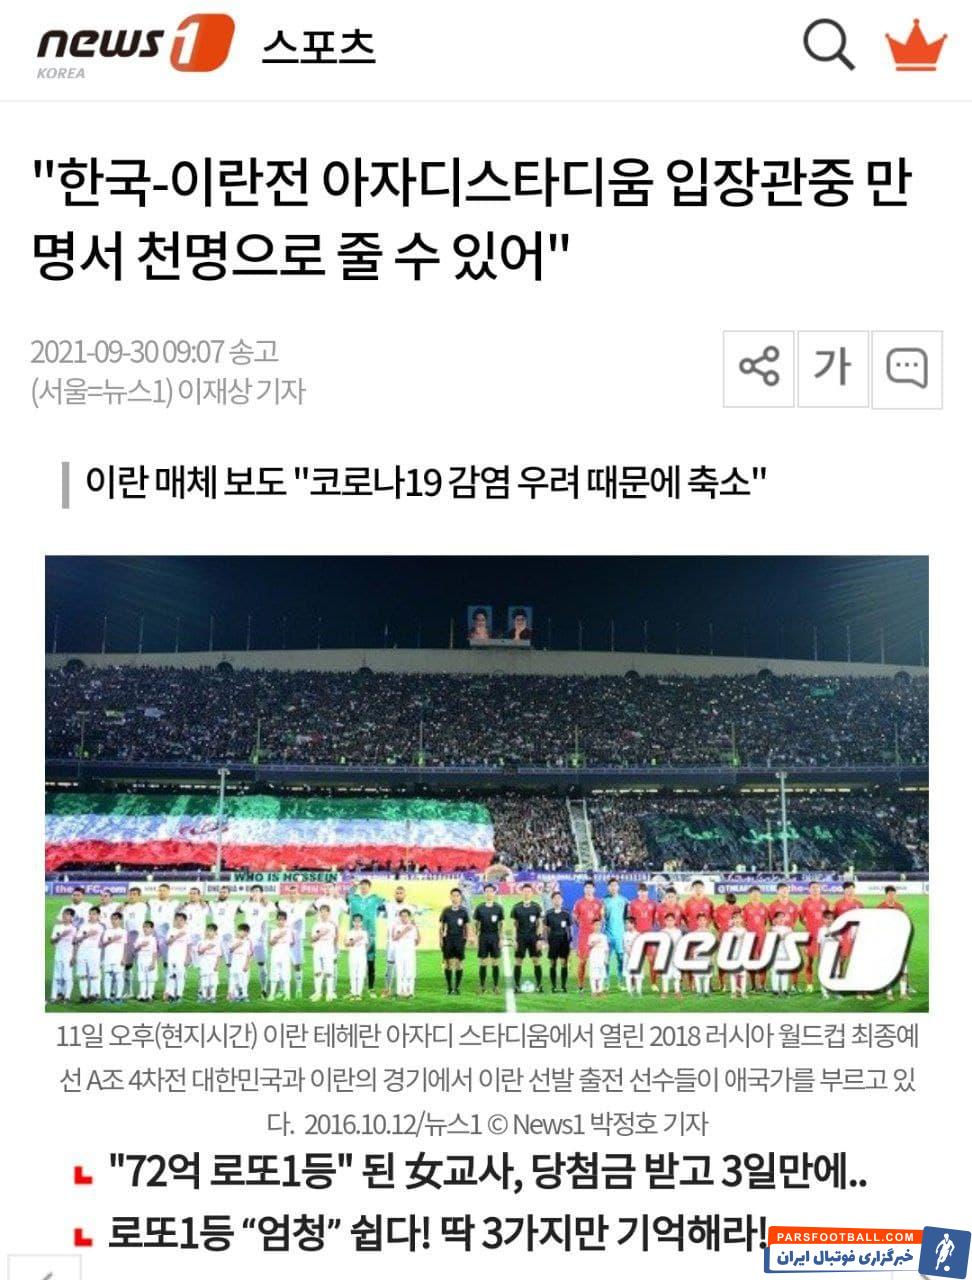 خوشحالی کره ای ها از حضور در ورزشگاه خالی آزادی